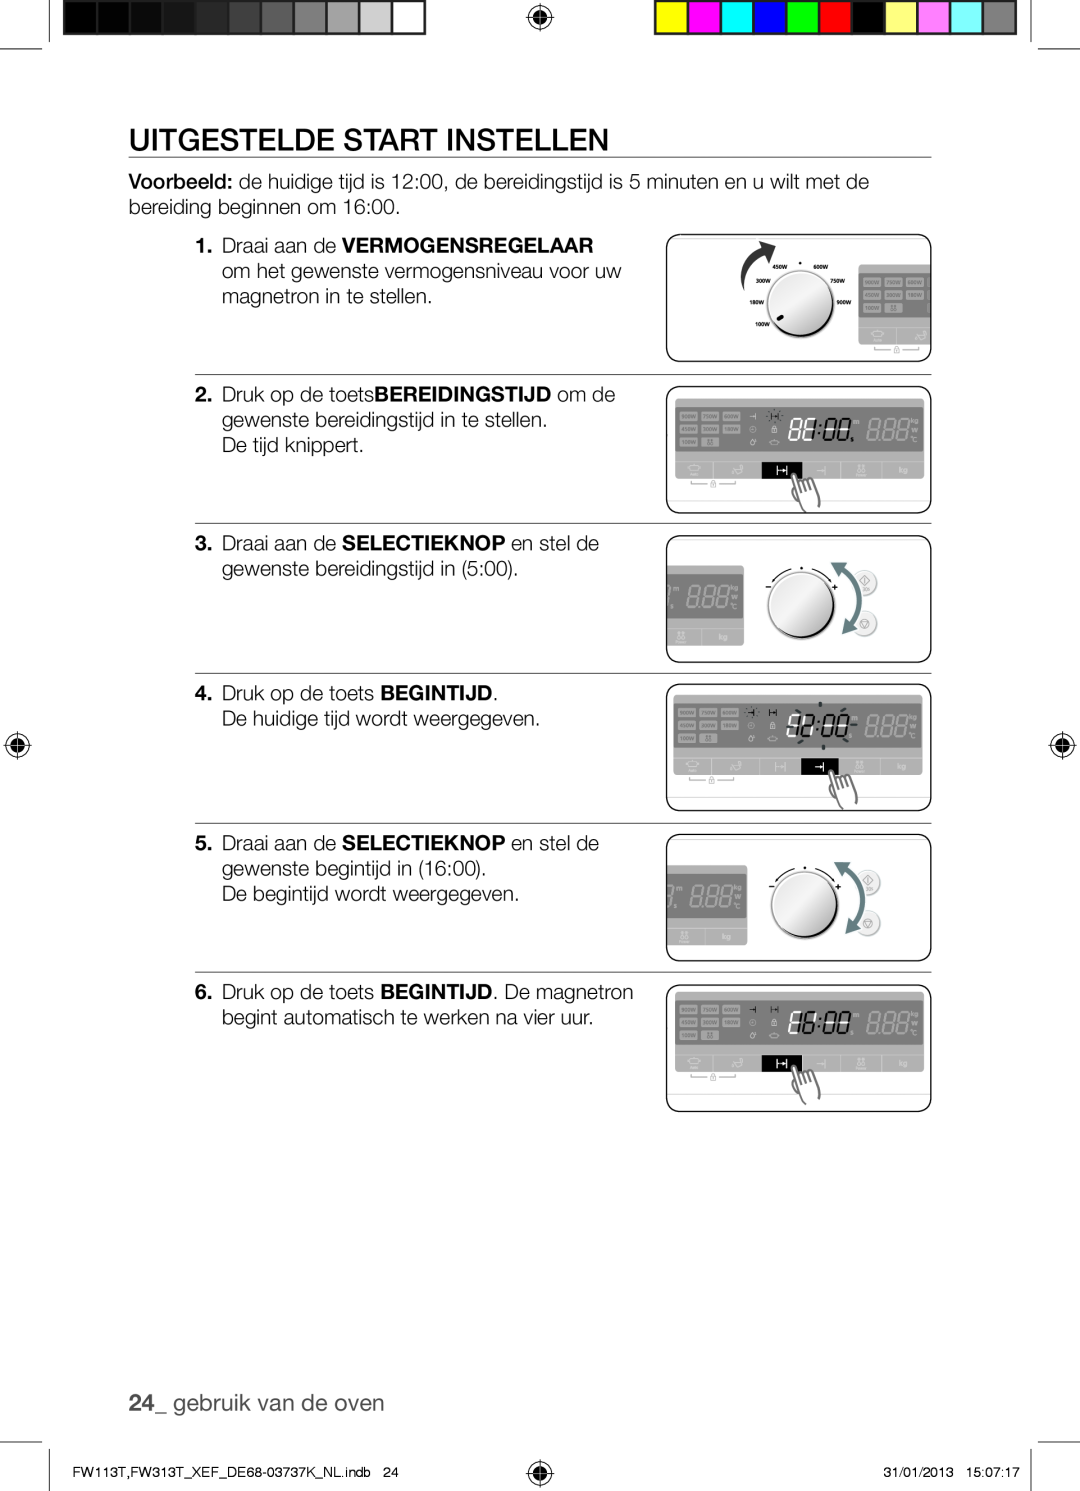 Samsung FW113T002/XEF manual Uitgestelde Start Instellen, gebruik van de oven 